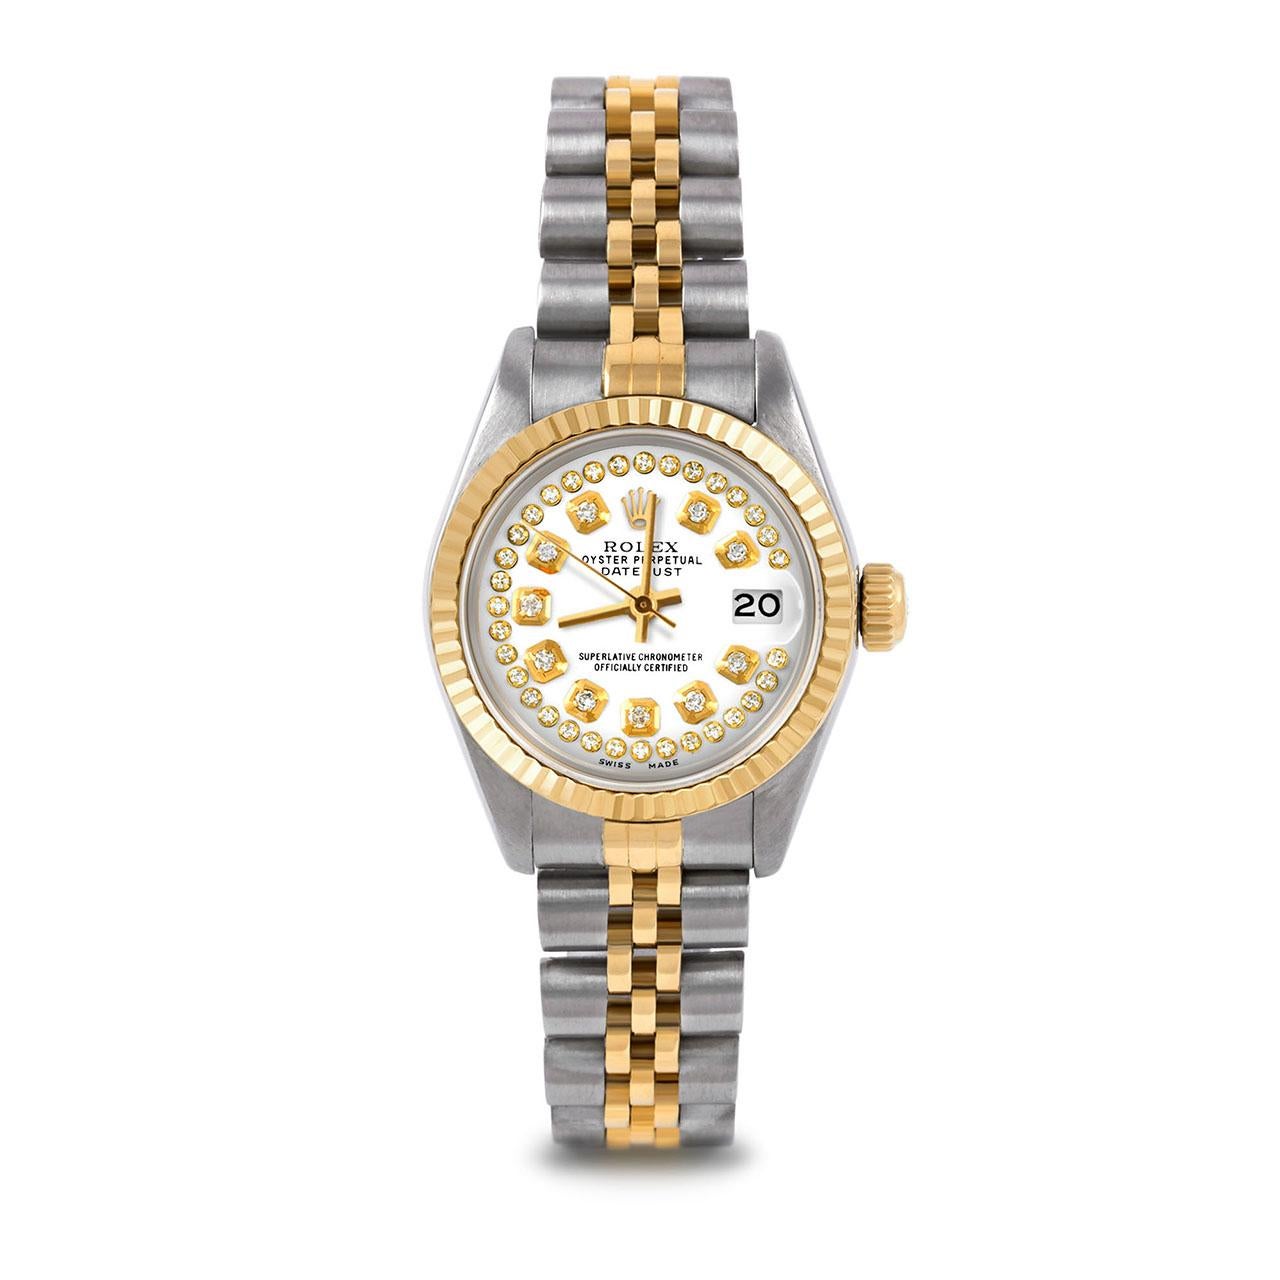 Pre-Owned Rolex 6917 Damen 26mm zwei Ton Datejust Uhr, benutzerdefinierte White String Diamond Dial & geriffelte Lünette auf Rolex 14K Gelbgold und Edelstahl Jubilee Band.   

SKU 6917-TT-WHT-STRD-FLT-JBL


Marke/Modell:        Rolex